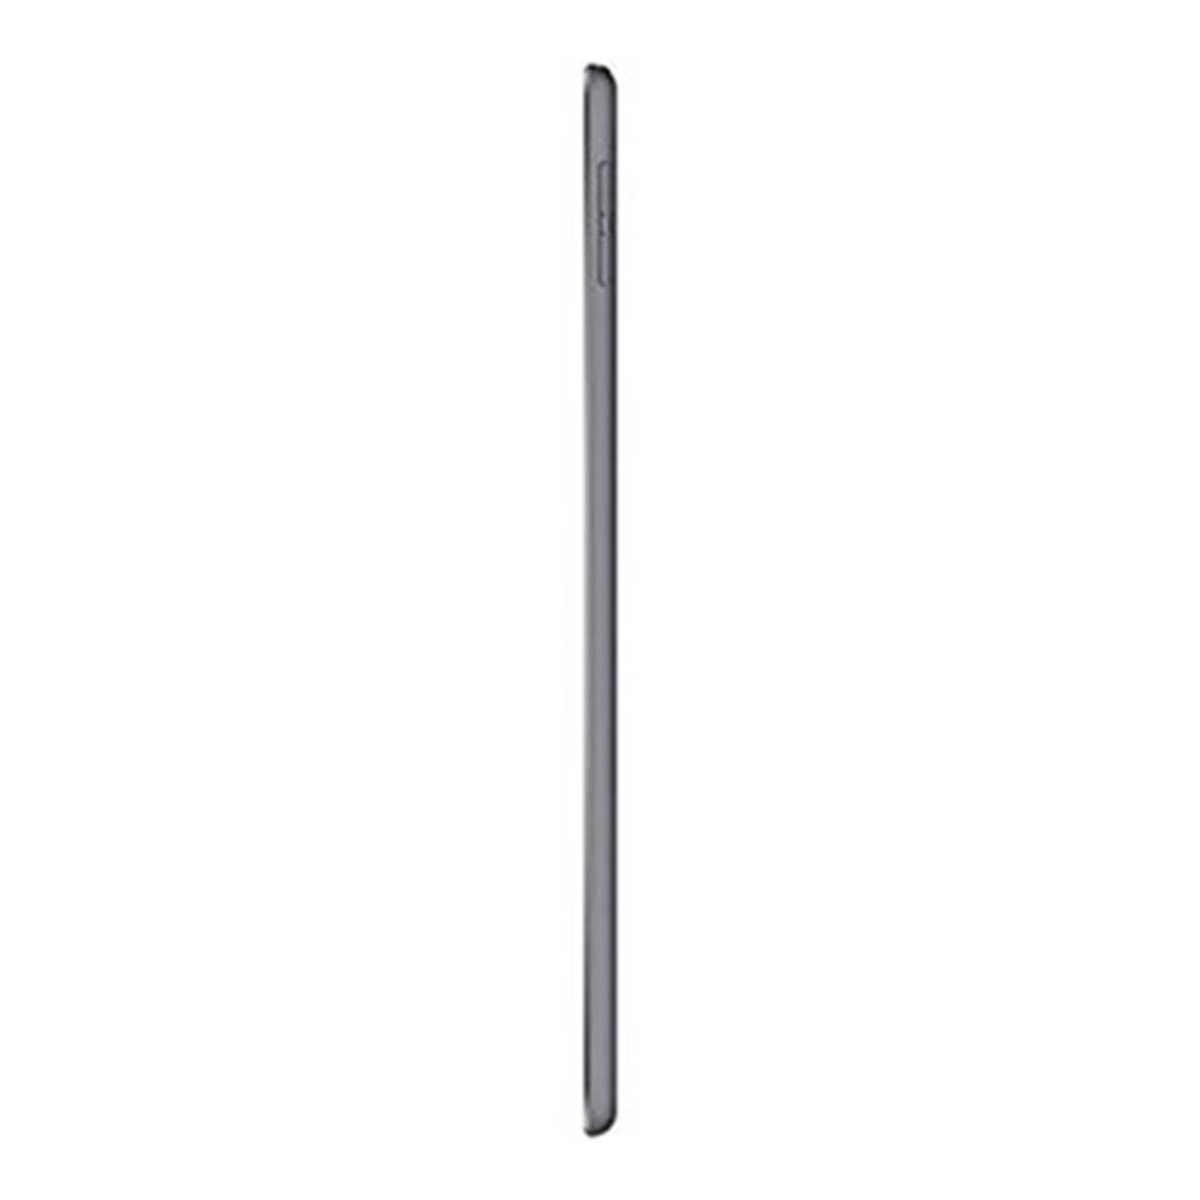 Apple iPad Mini (Wi-Fi, 64GB) Space Gray